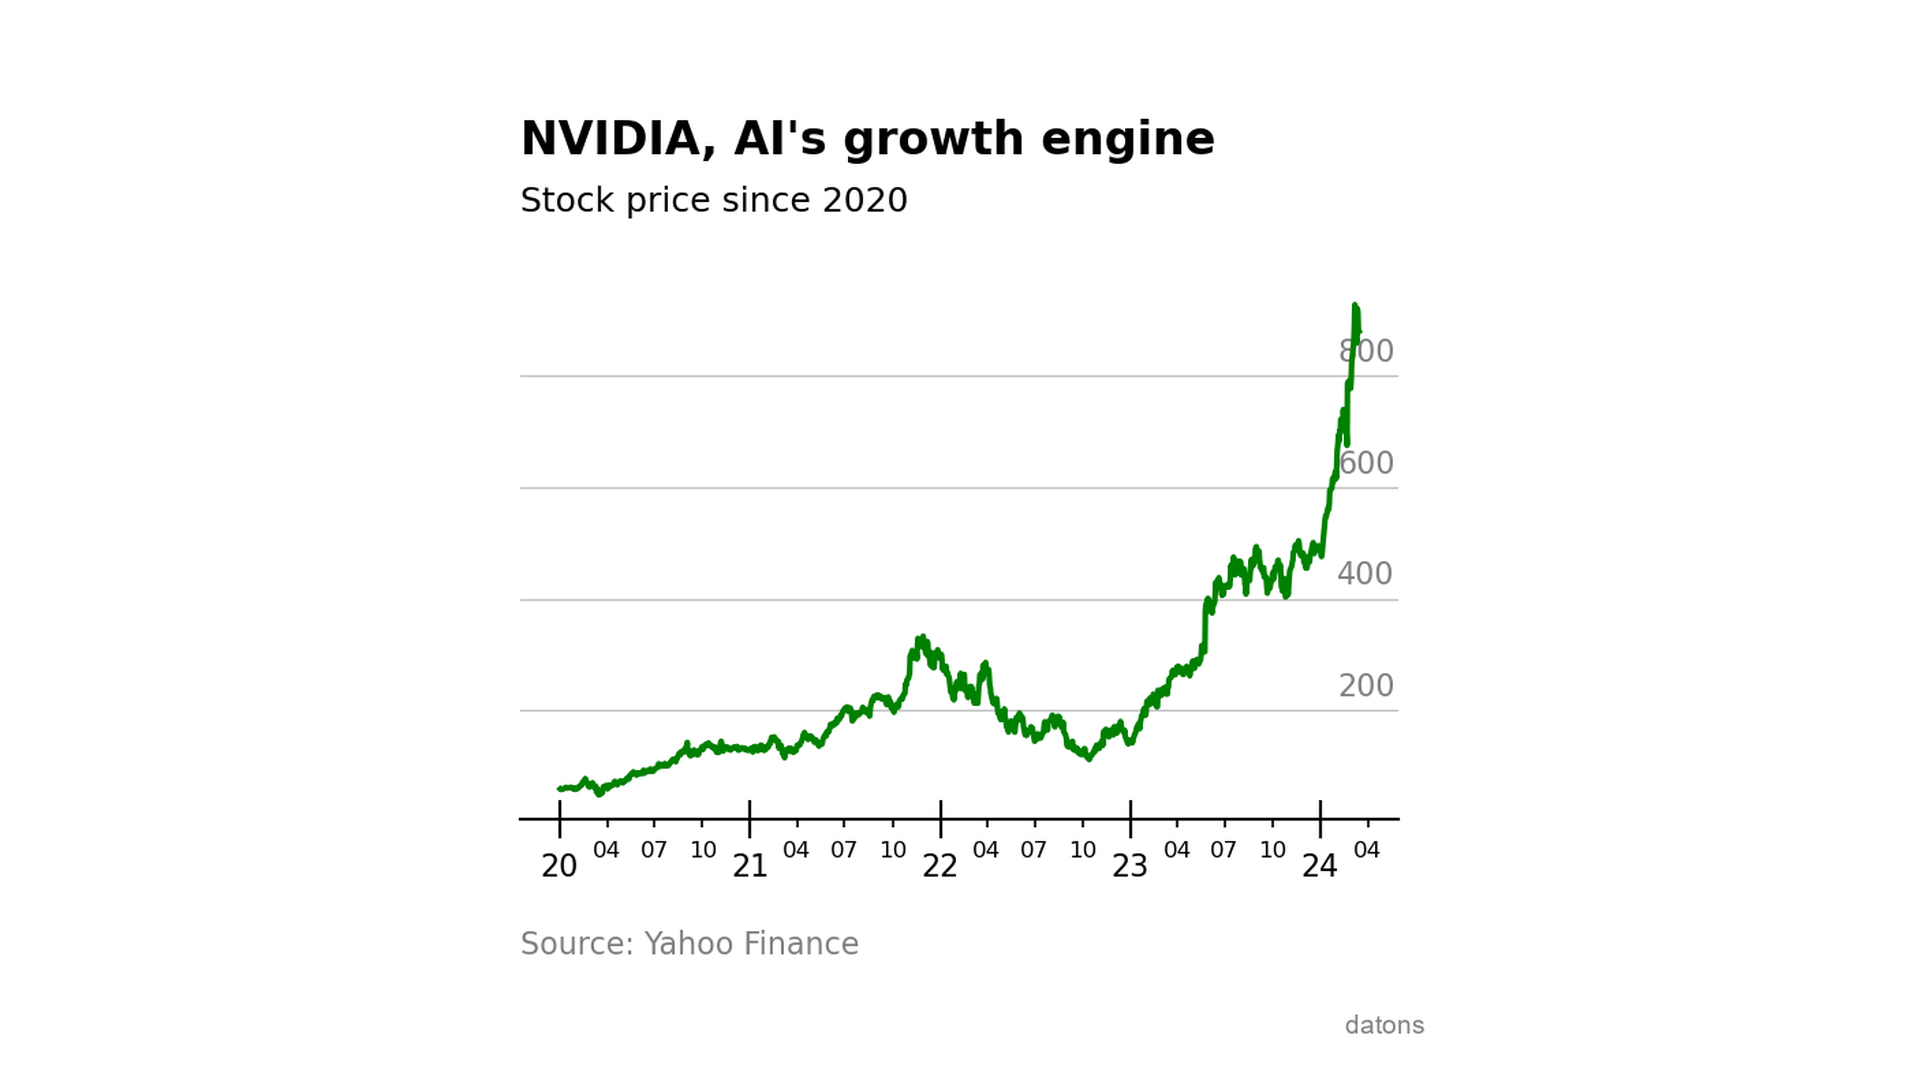 Evolución de los precios de cierre ajustados de las acciones de NVIDIA desde 2020, destacando tendencias y volatilidades.